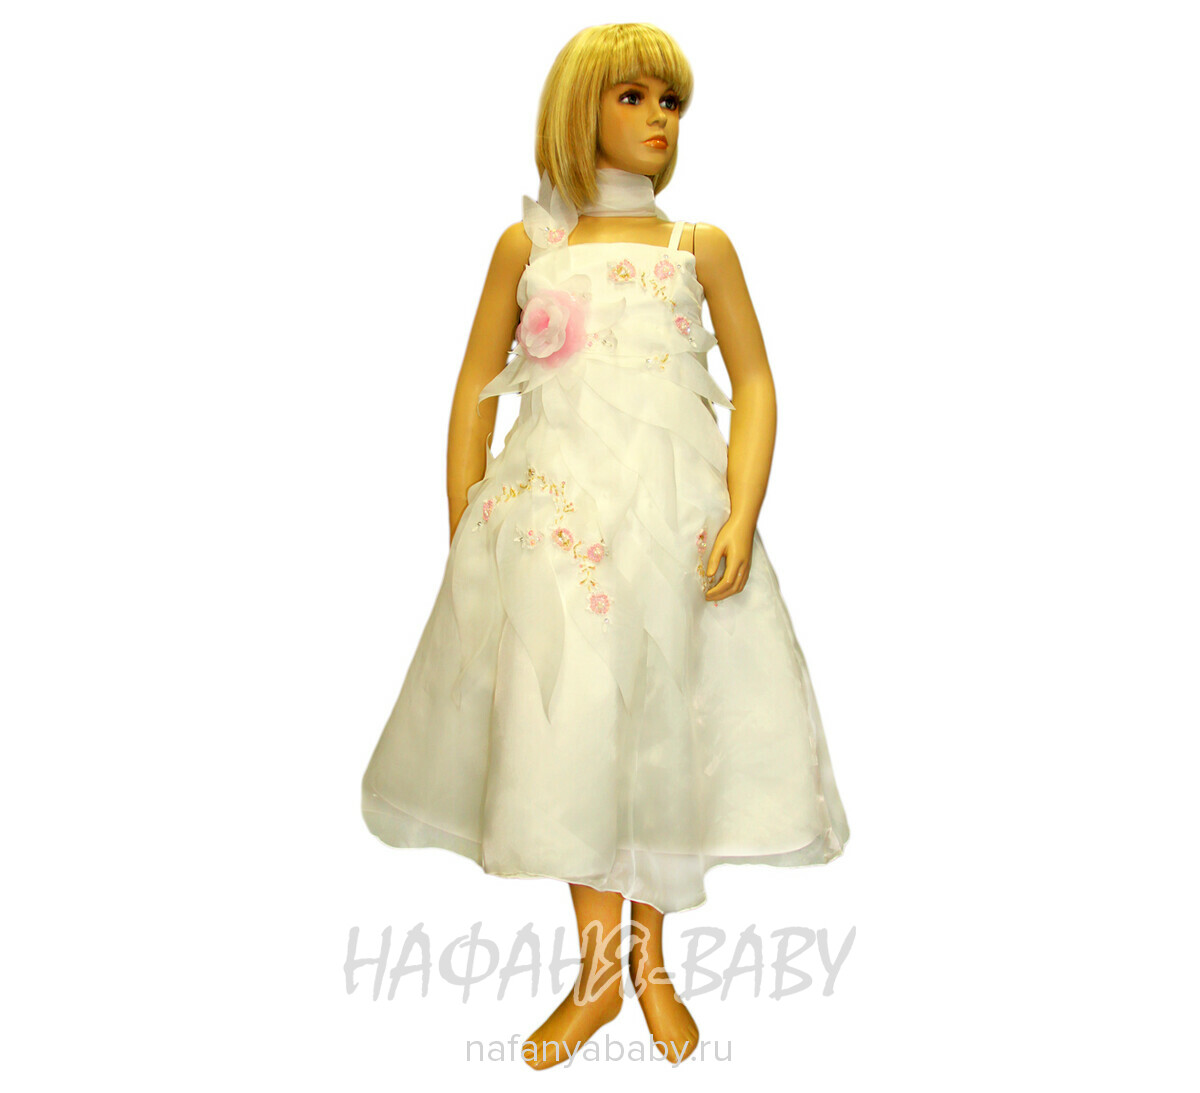 Детское нарядное платье+шарфик BABY MOSES, купить в интернет магазине Нафаня. арт: 206.